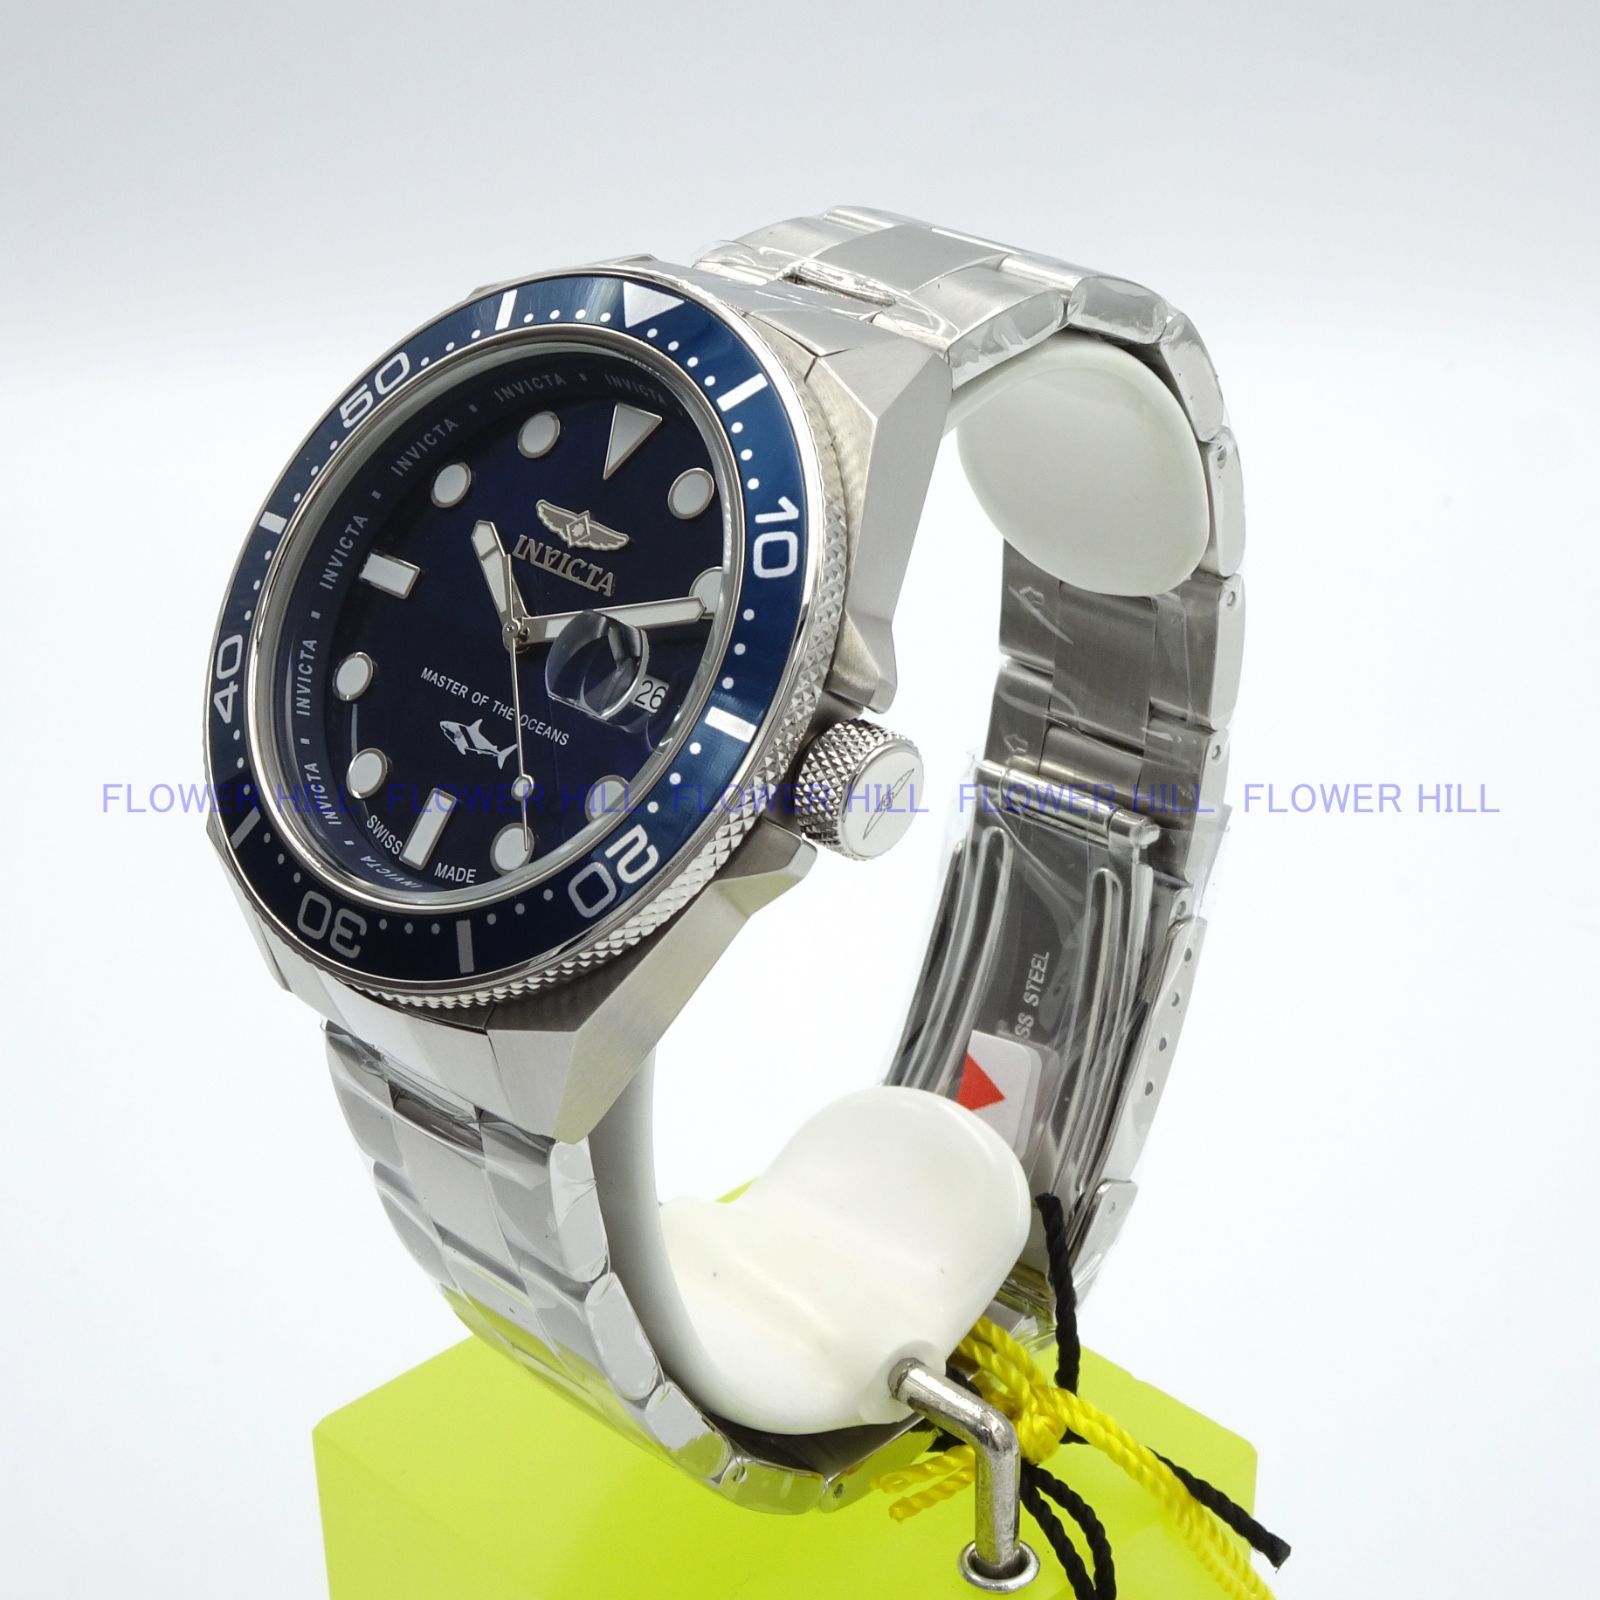 INVICTA インビクタ 腕時計 メンズ クォーツ スイスムーブメント PRO DIVER 39865 ブルー メタルバンド - メルカリ